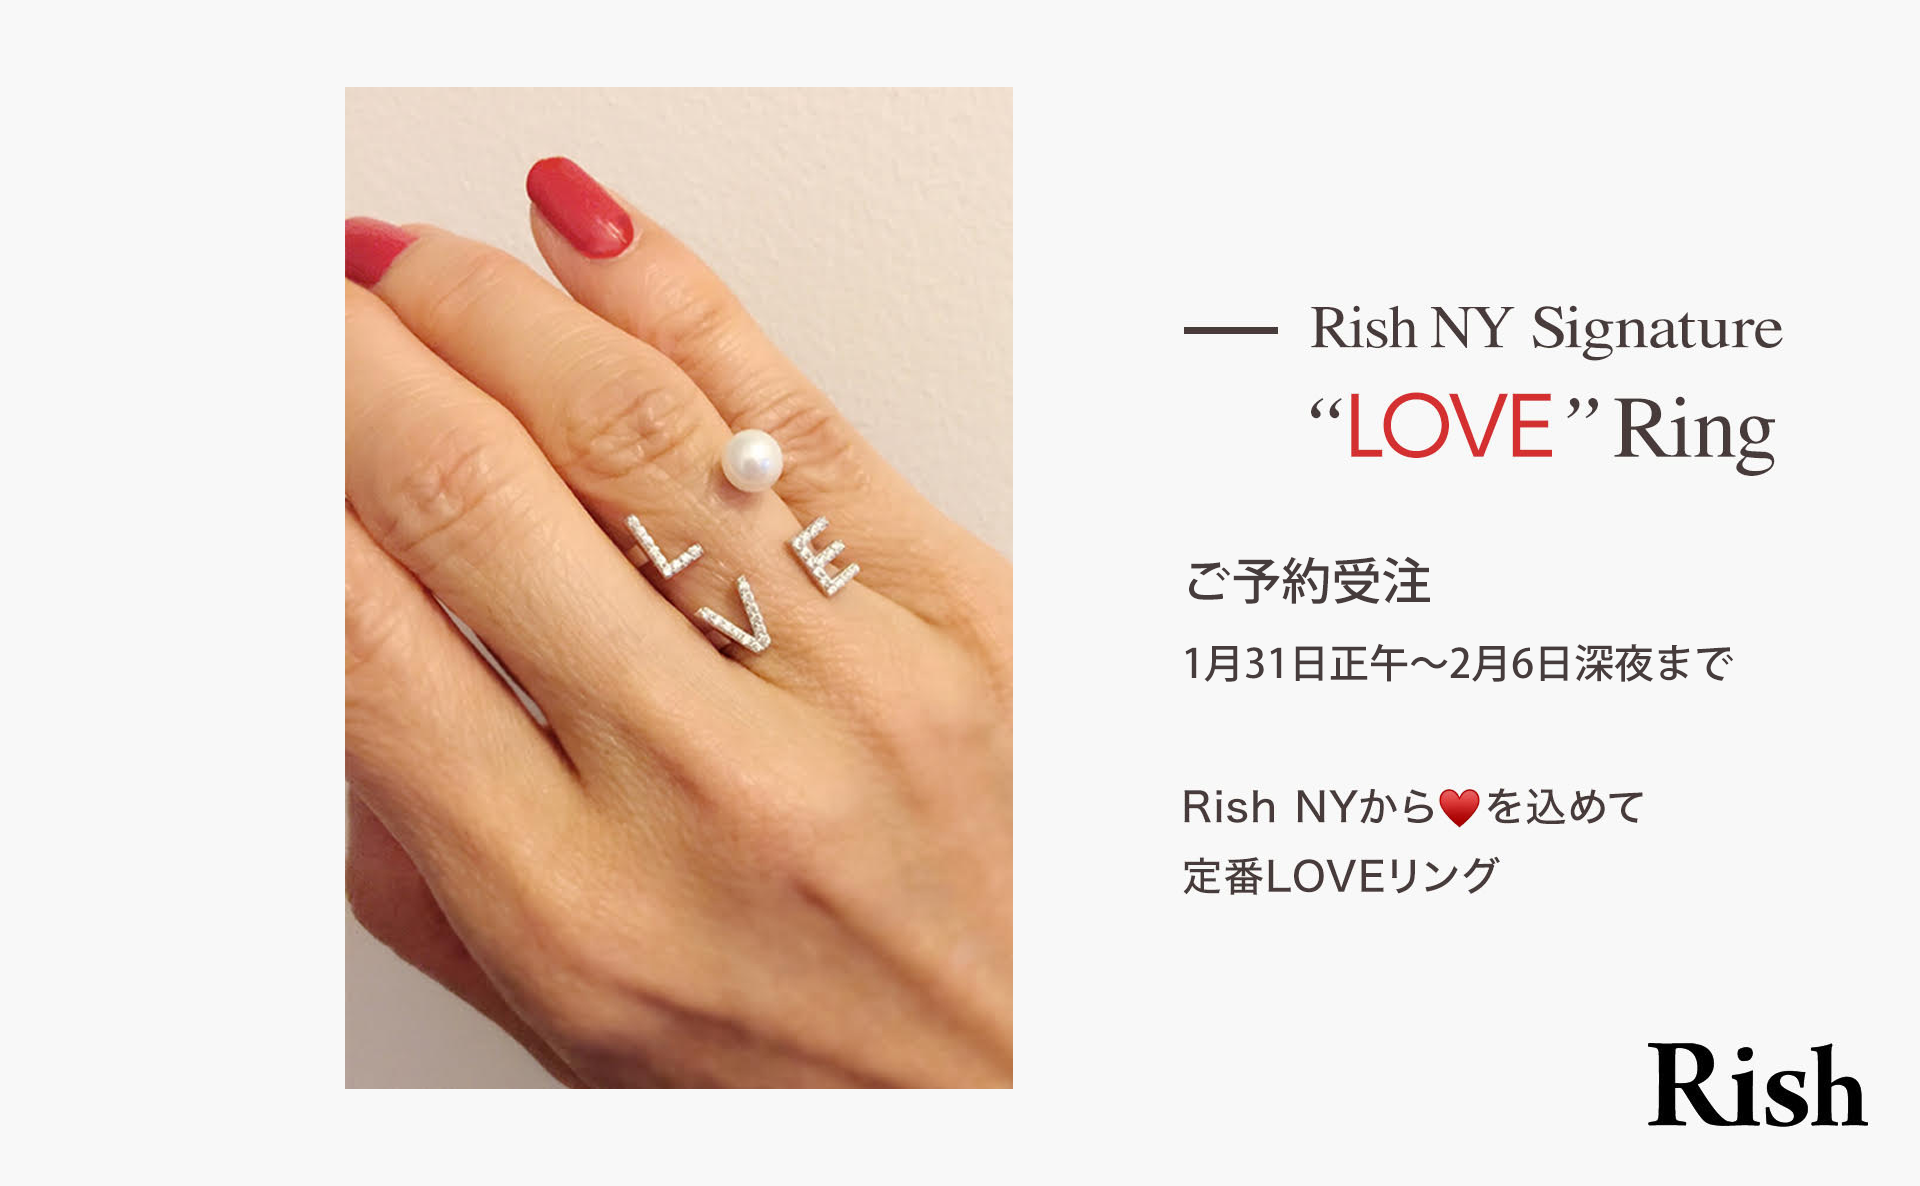 Rish NY love ring